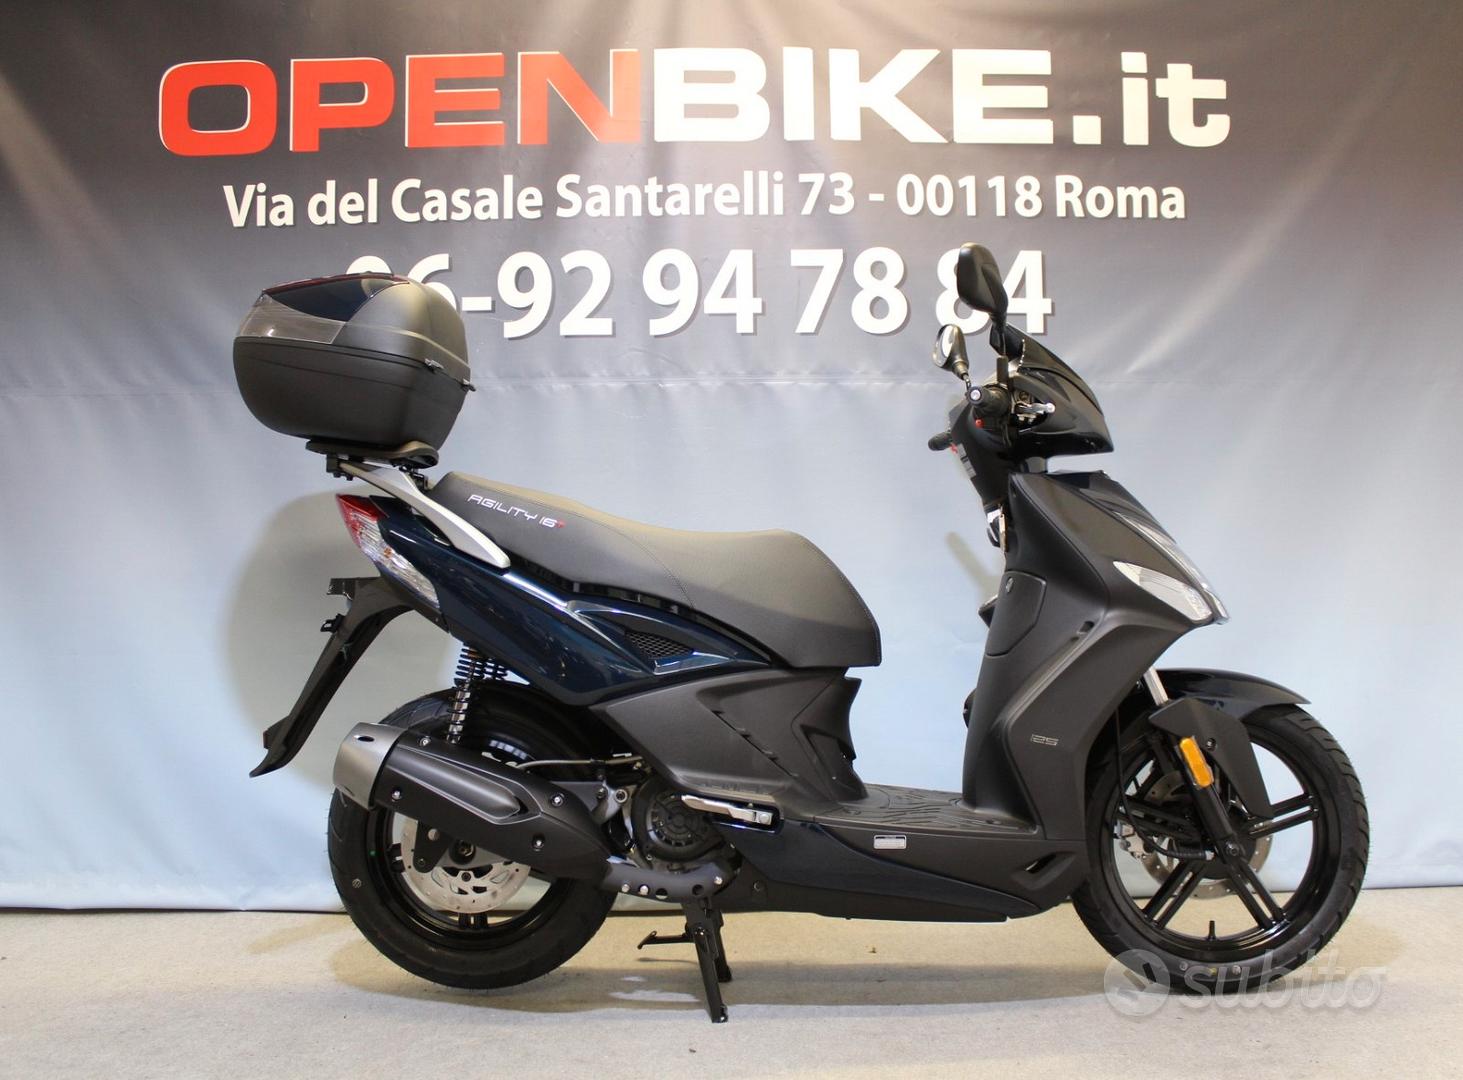 Subito - Openbike.it - AGILITY R16 125 Power Up - CBS - E5 MY2023 - Moto e  Scooter In vendita a Roma